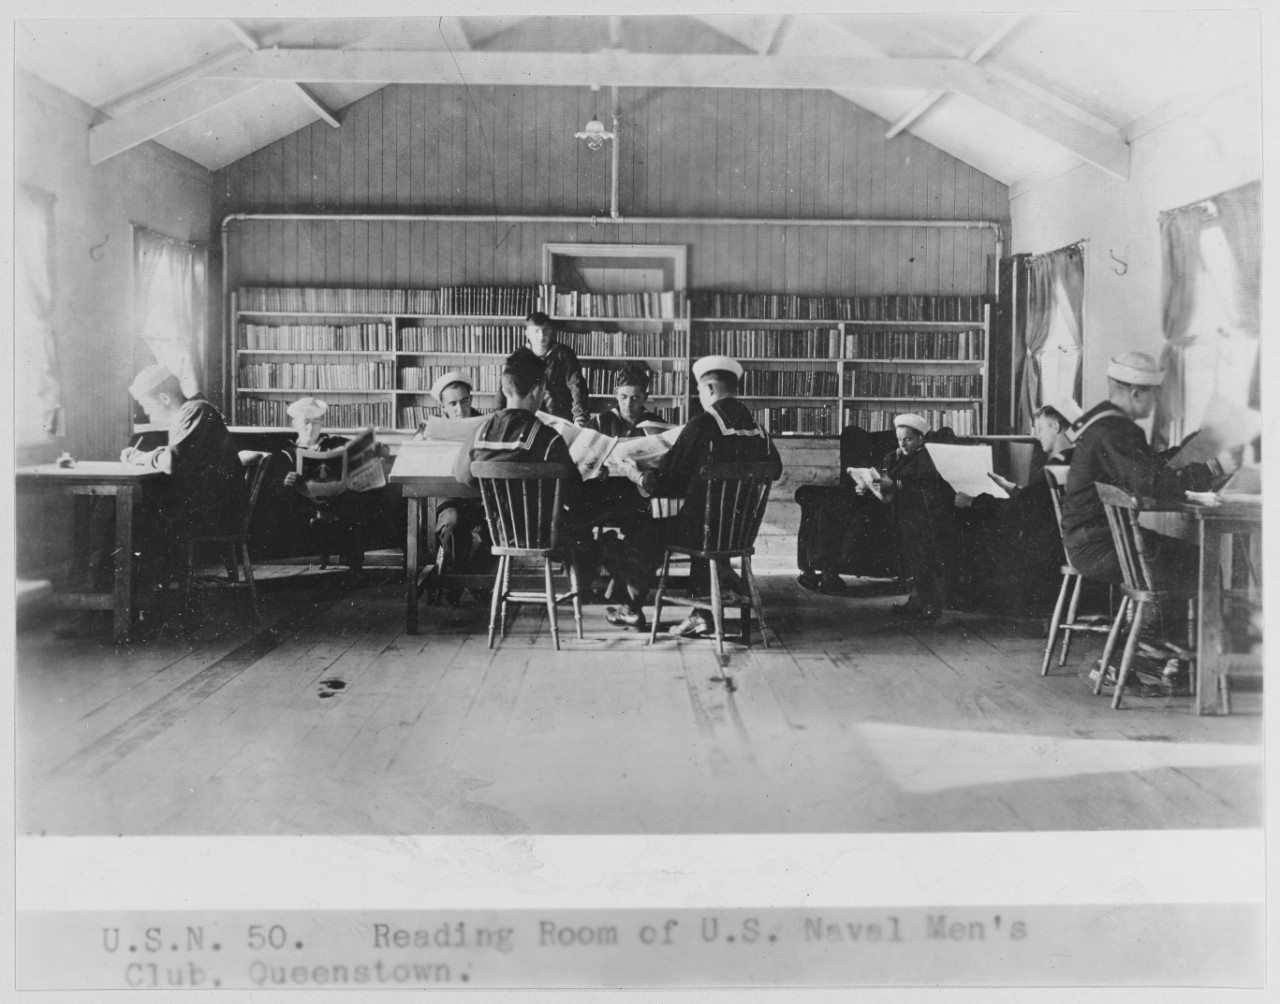 Reading room of U.S. Naval men's club, Queenstown